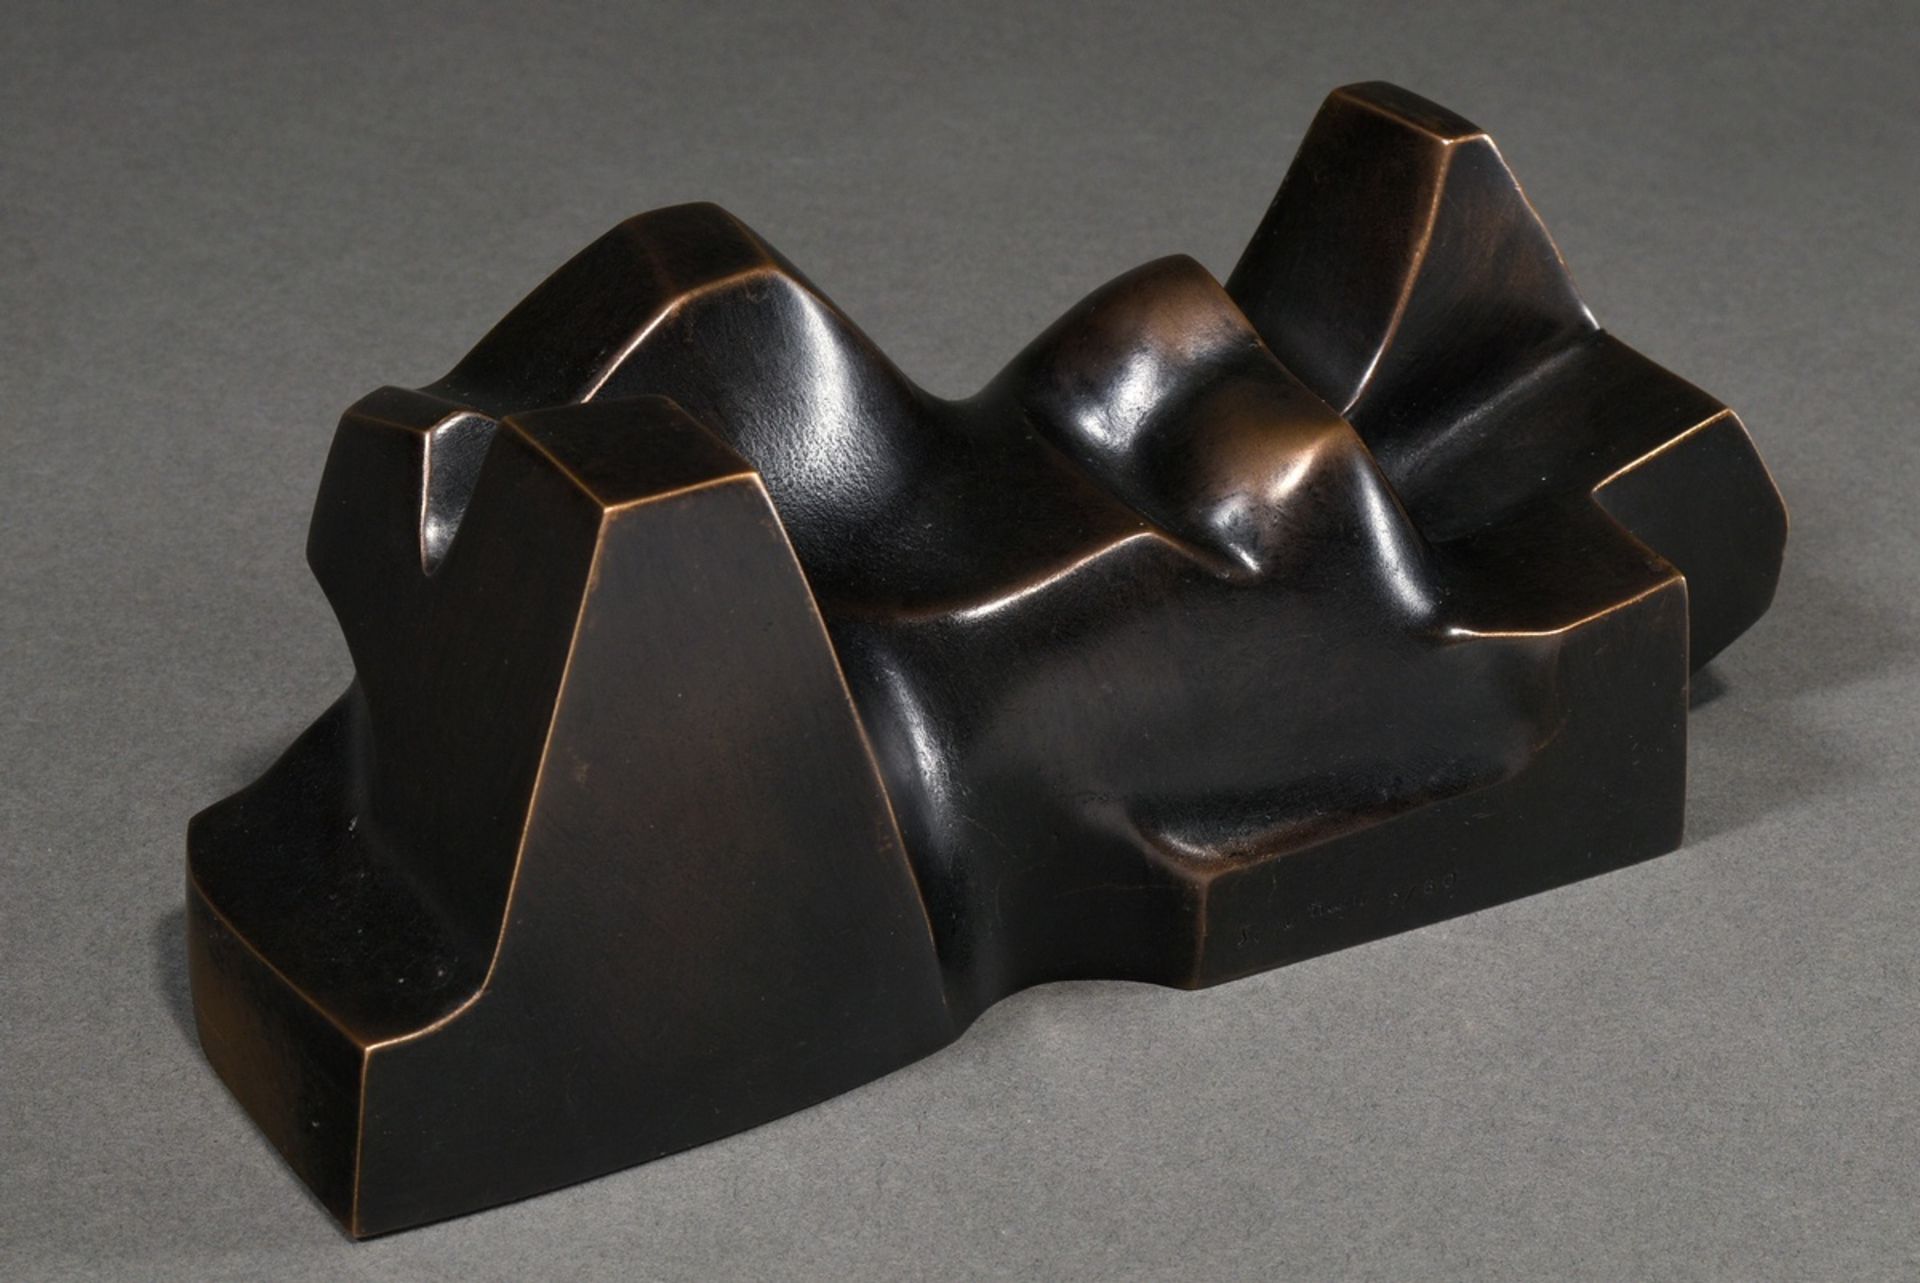 Schumann, Pierre (1917-2011) "Carrara liegend, weiblich", Bronze dunkel patiniert, 5/60, seitl. sig